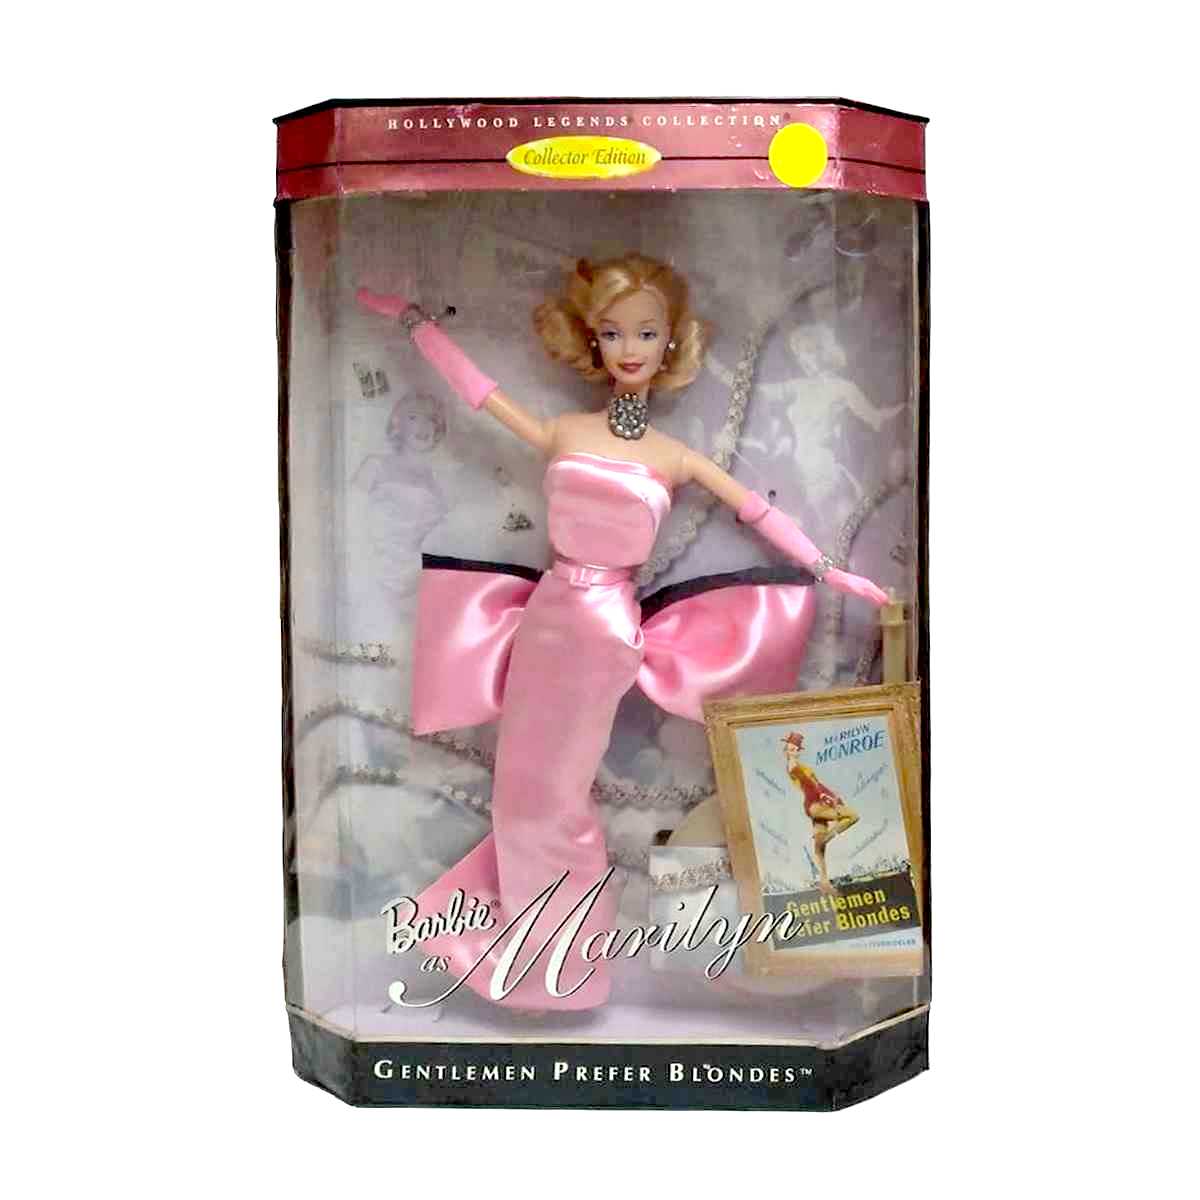 Barbie as Marilyn Monroe in pink dress 1997 Gentlemen Prefer Blondes